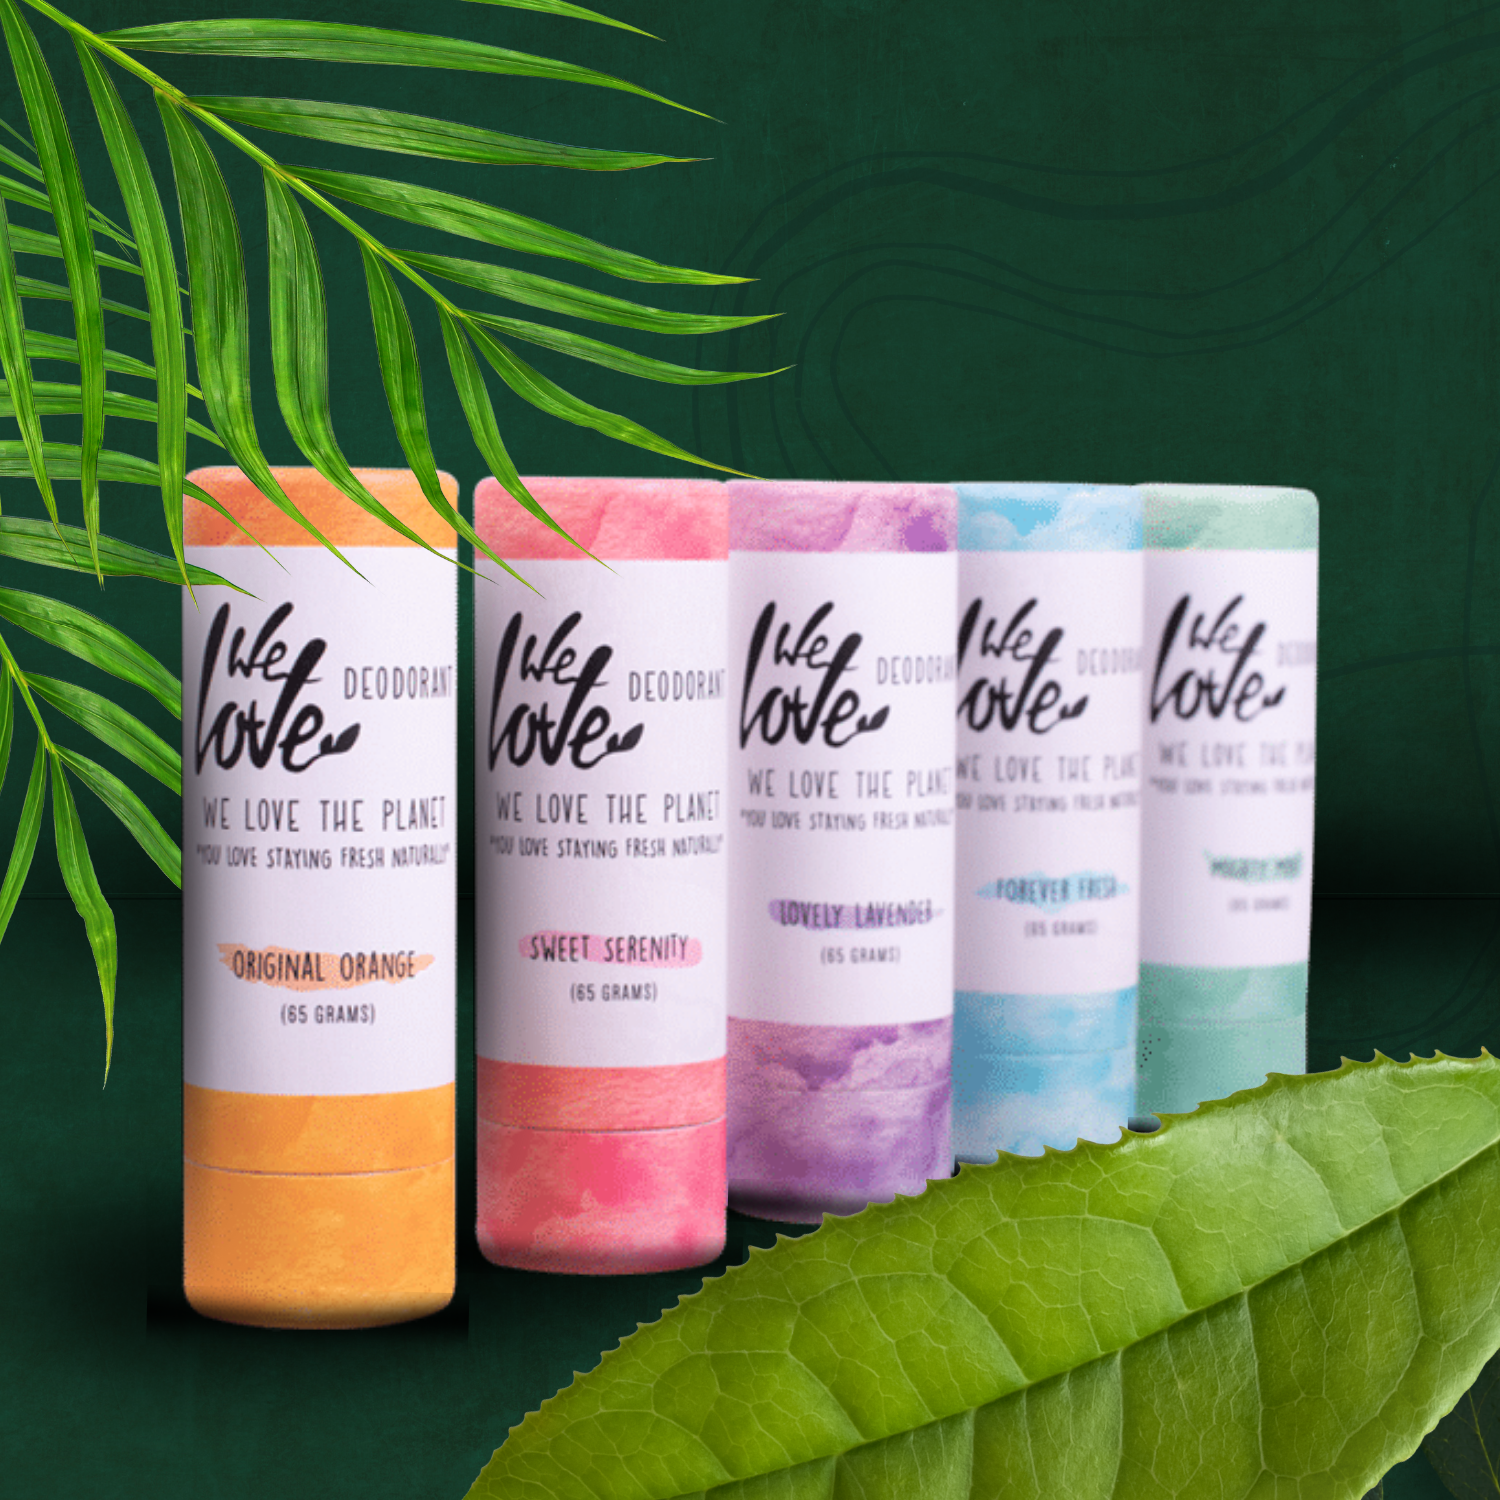 Fire forskellige typer We Love The Planet Deodorant, der promoverer naturlig velvære på en grøn baggrund.